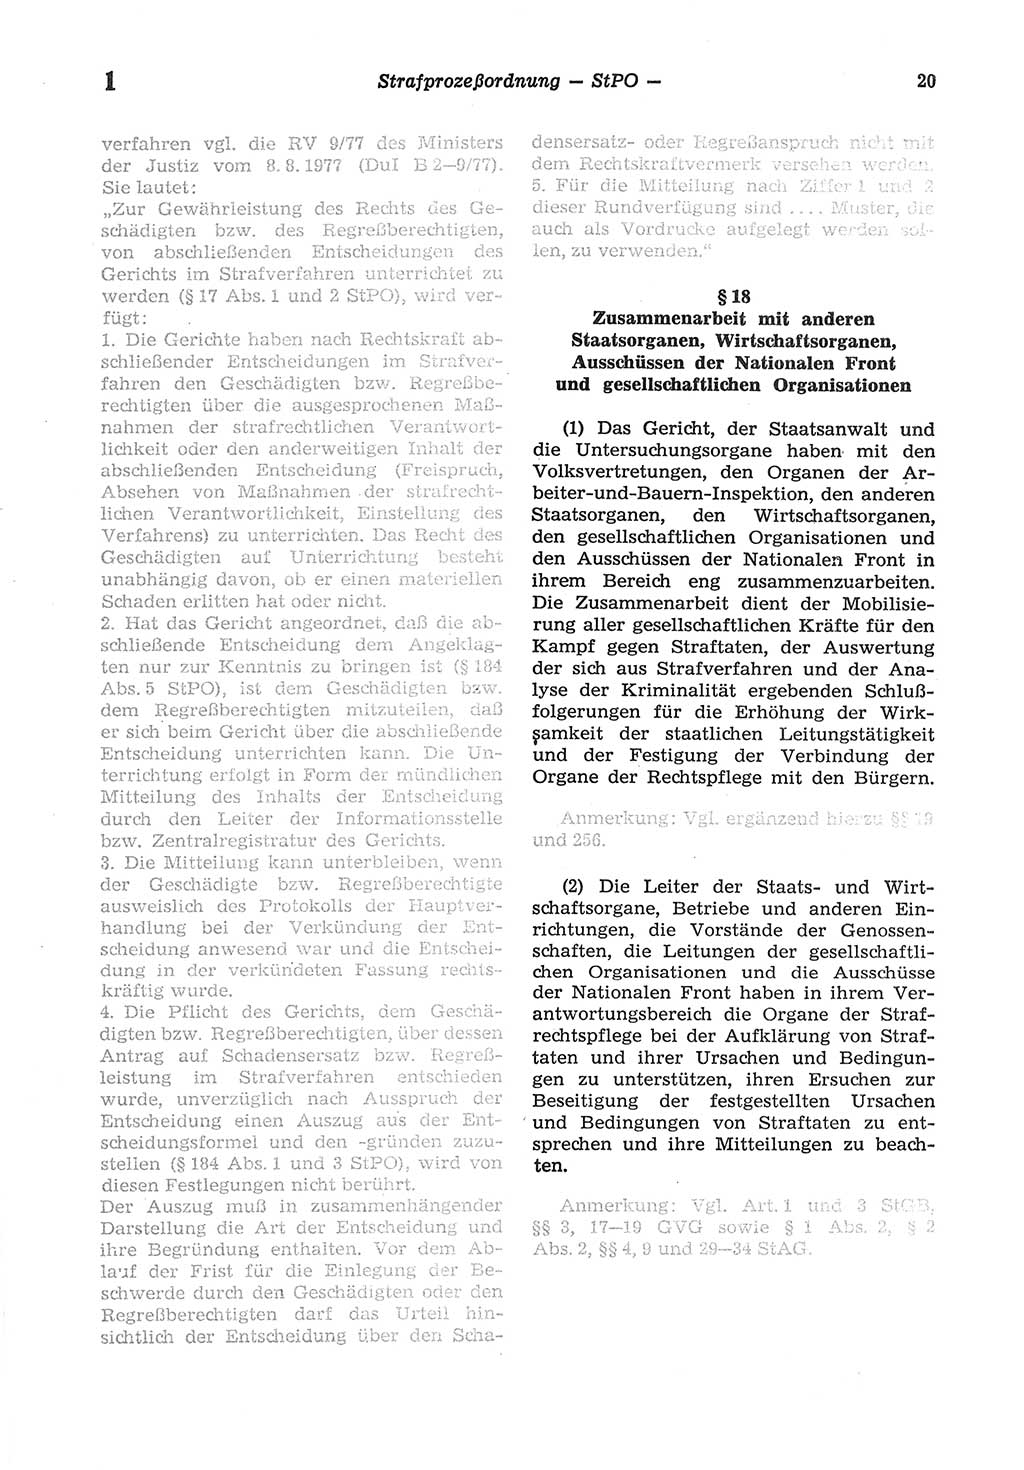 Strafprozeßordnung (StPO) der Deutschen Demokratischen Republik (DDR) sowie angrenzende Gesetze und Bestimmungen 1977, Seite 20 (StPO DDR Ges. Best. 1977, S. 20)